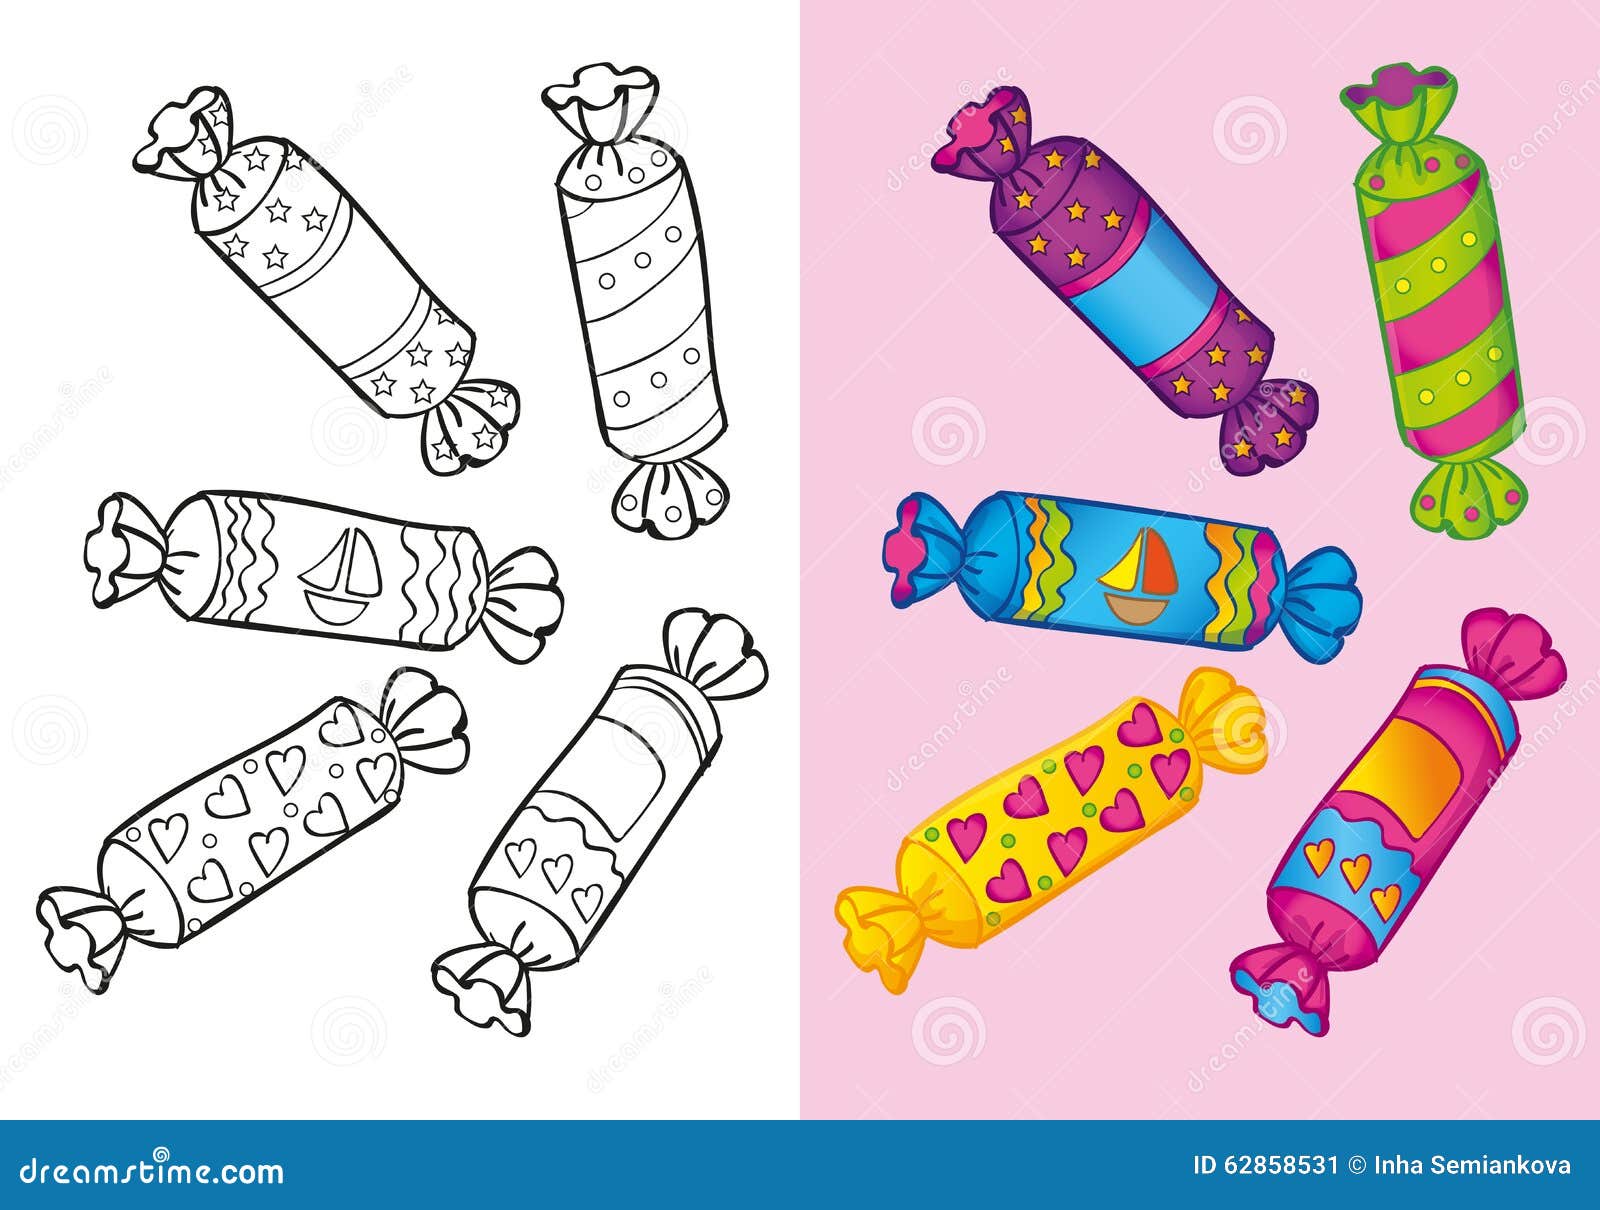 Конфеты для детей цветные раскраски